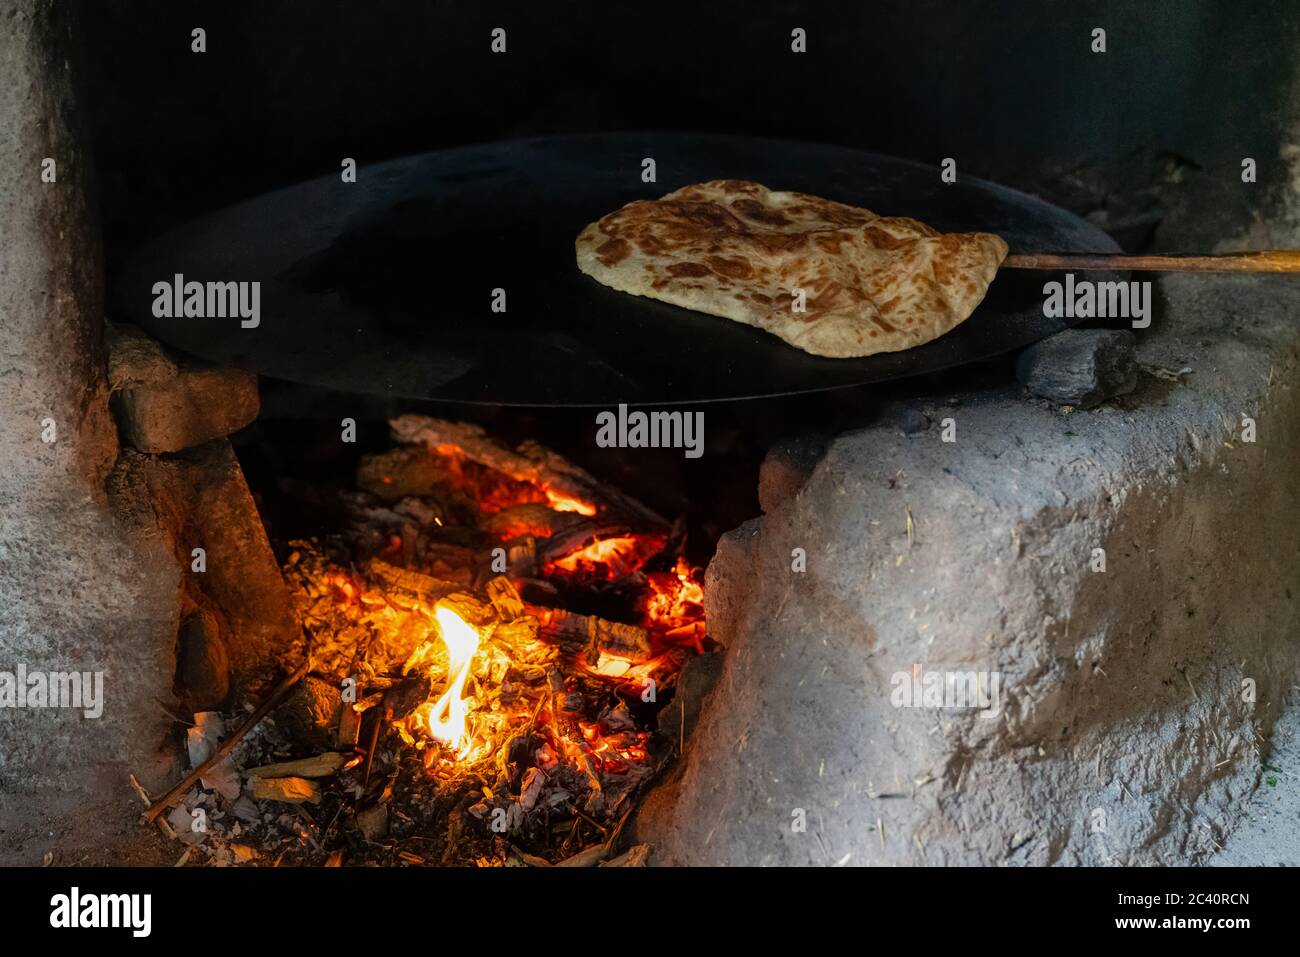 Making gozleme bread on wooden fire in rural  region in Turkey Stock Photo